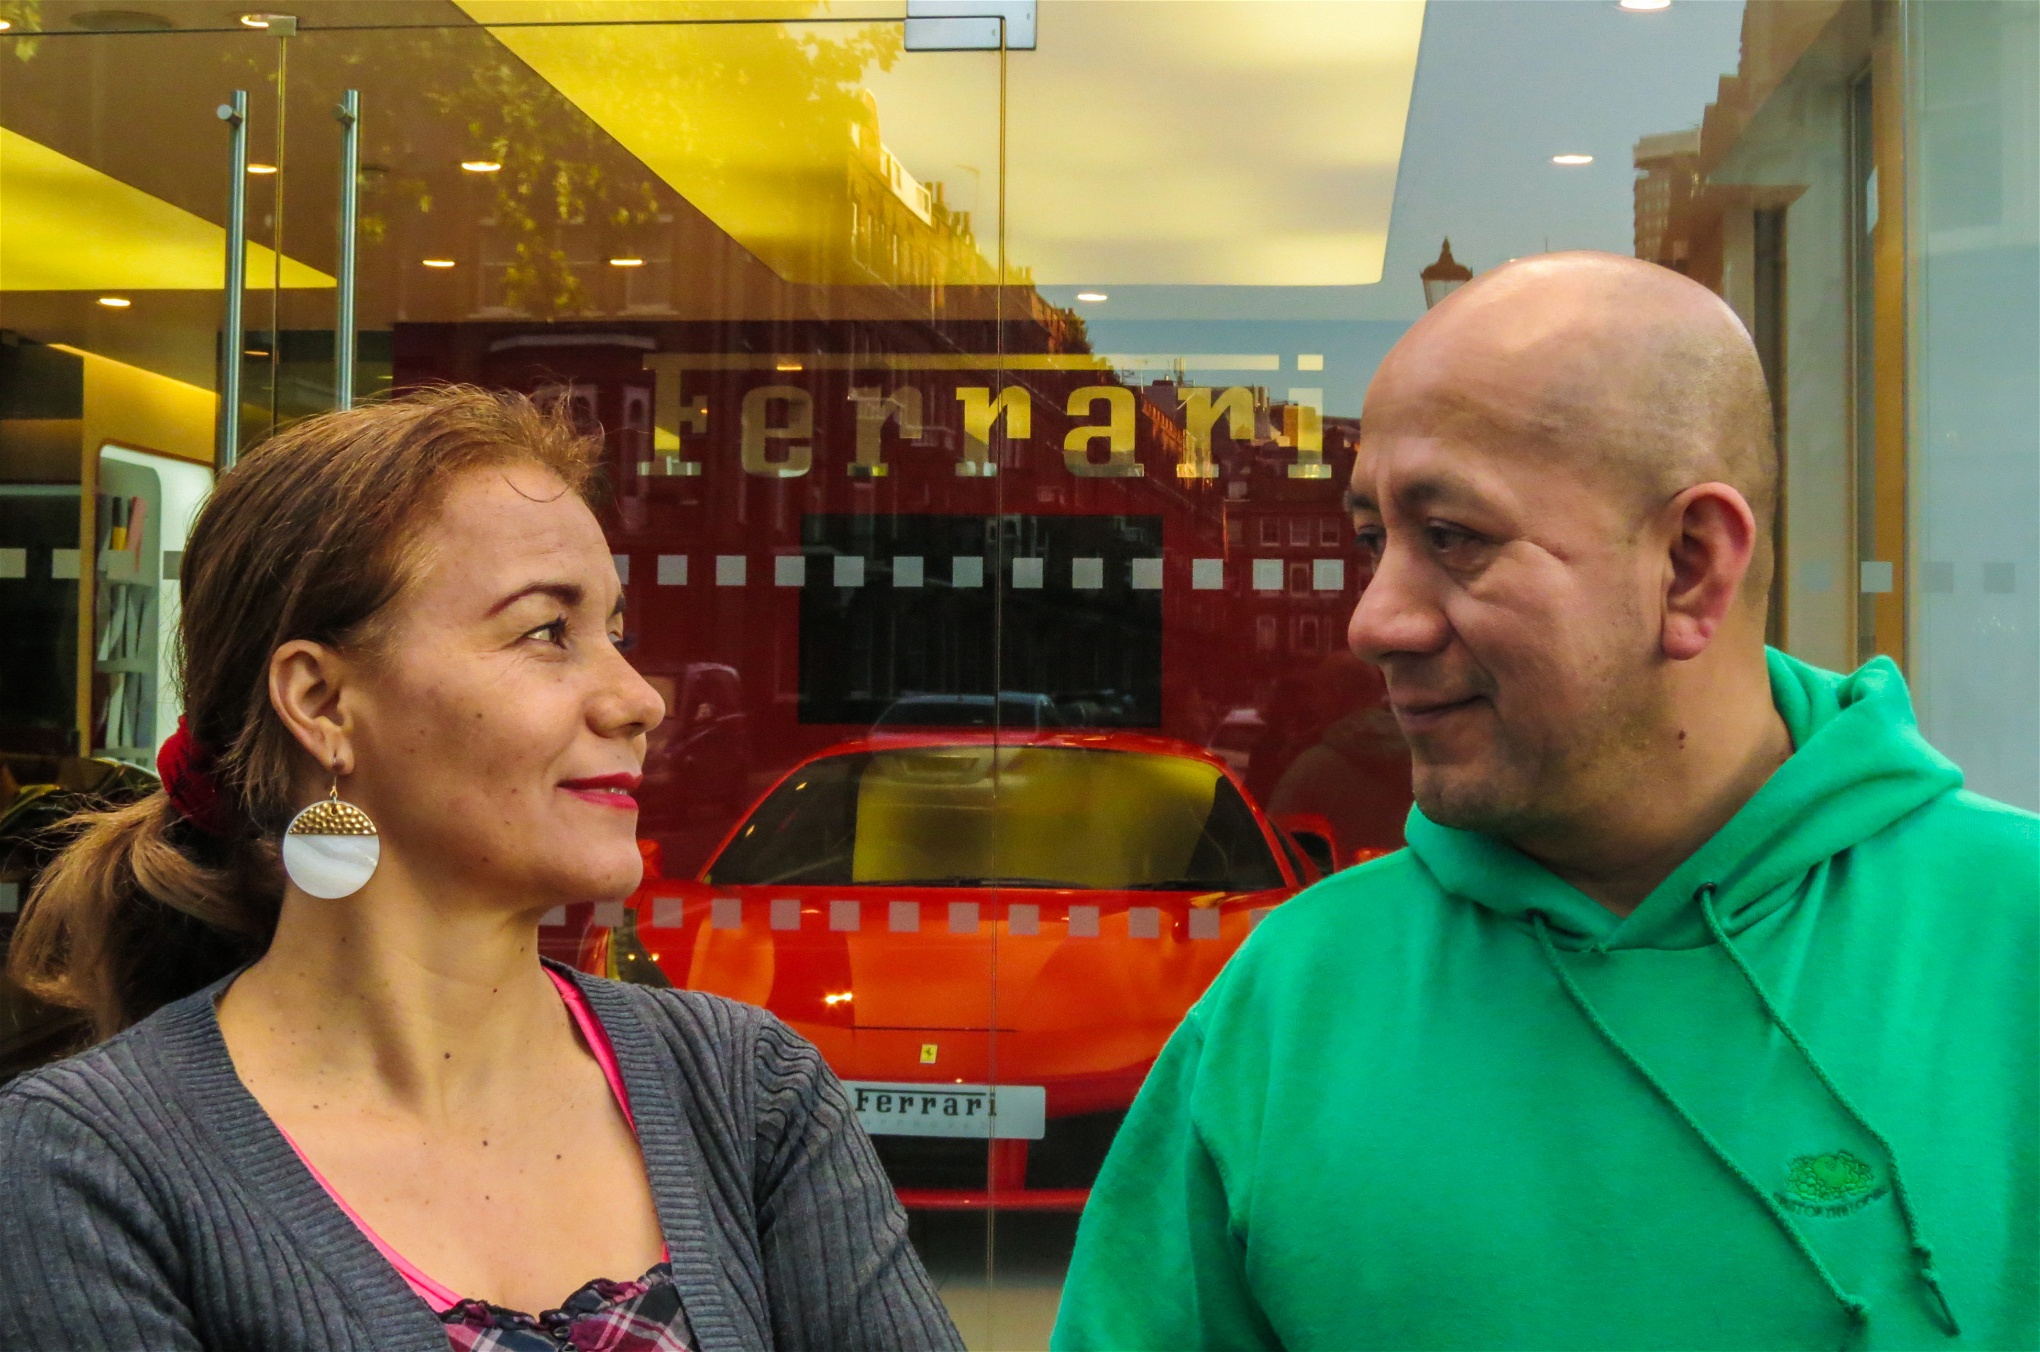 Freddy
López och Angélica Bolanos
utanför Ferraris visningshallar.